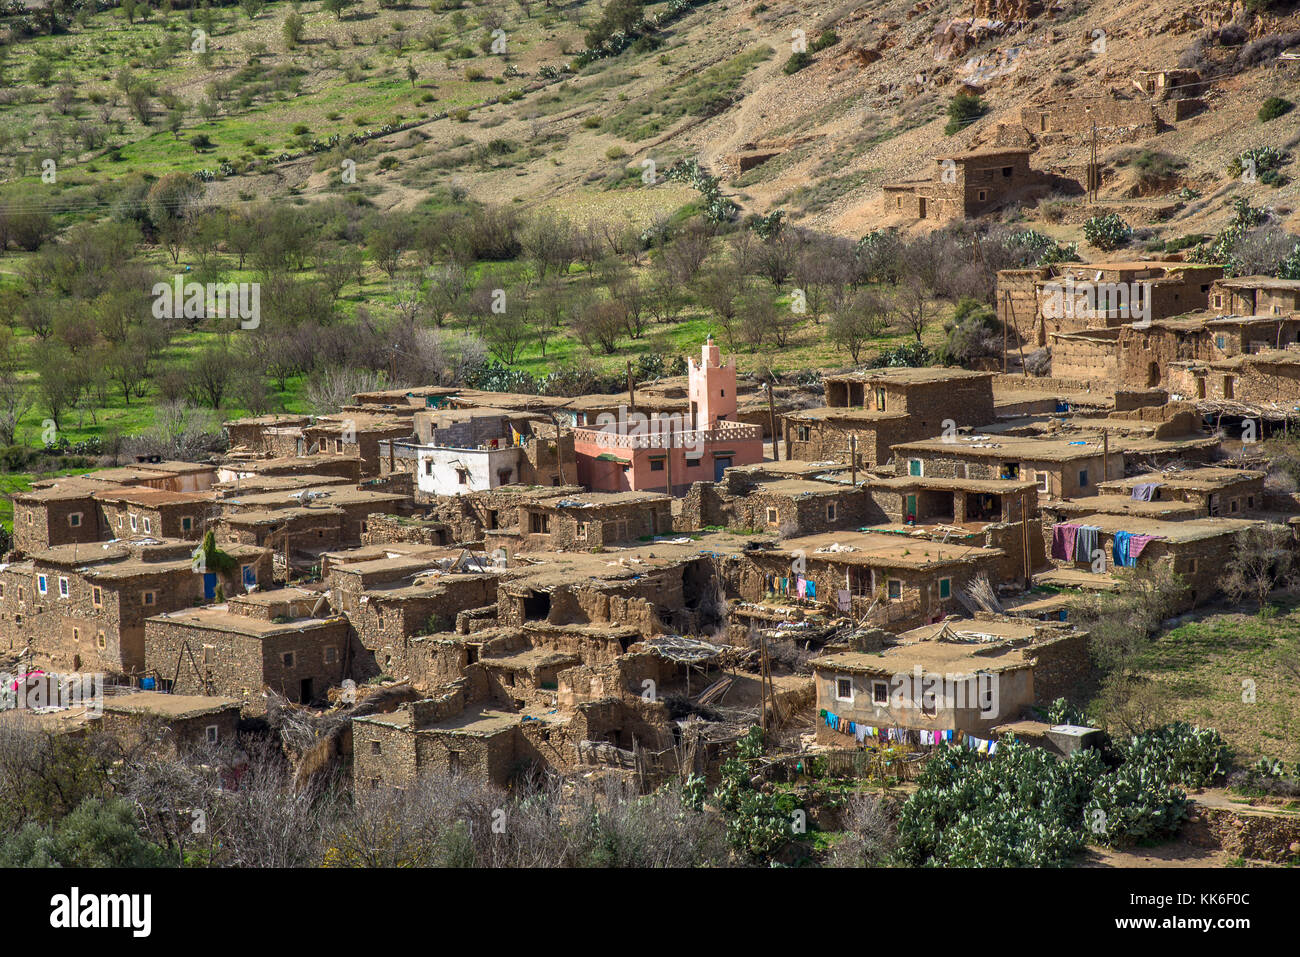 Village de la vallée d'imlill tiz n test pass, Maroc Banque D'Images